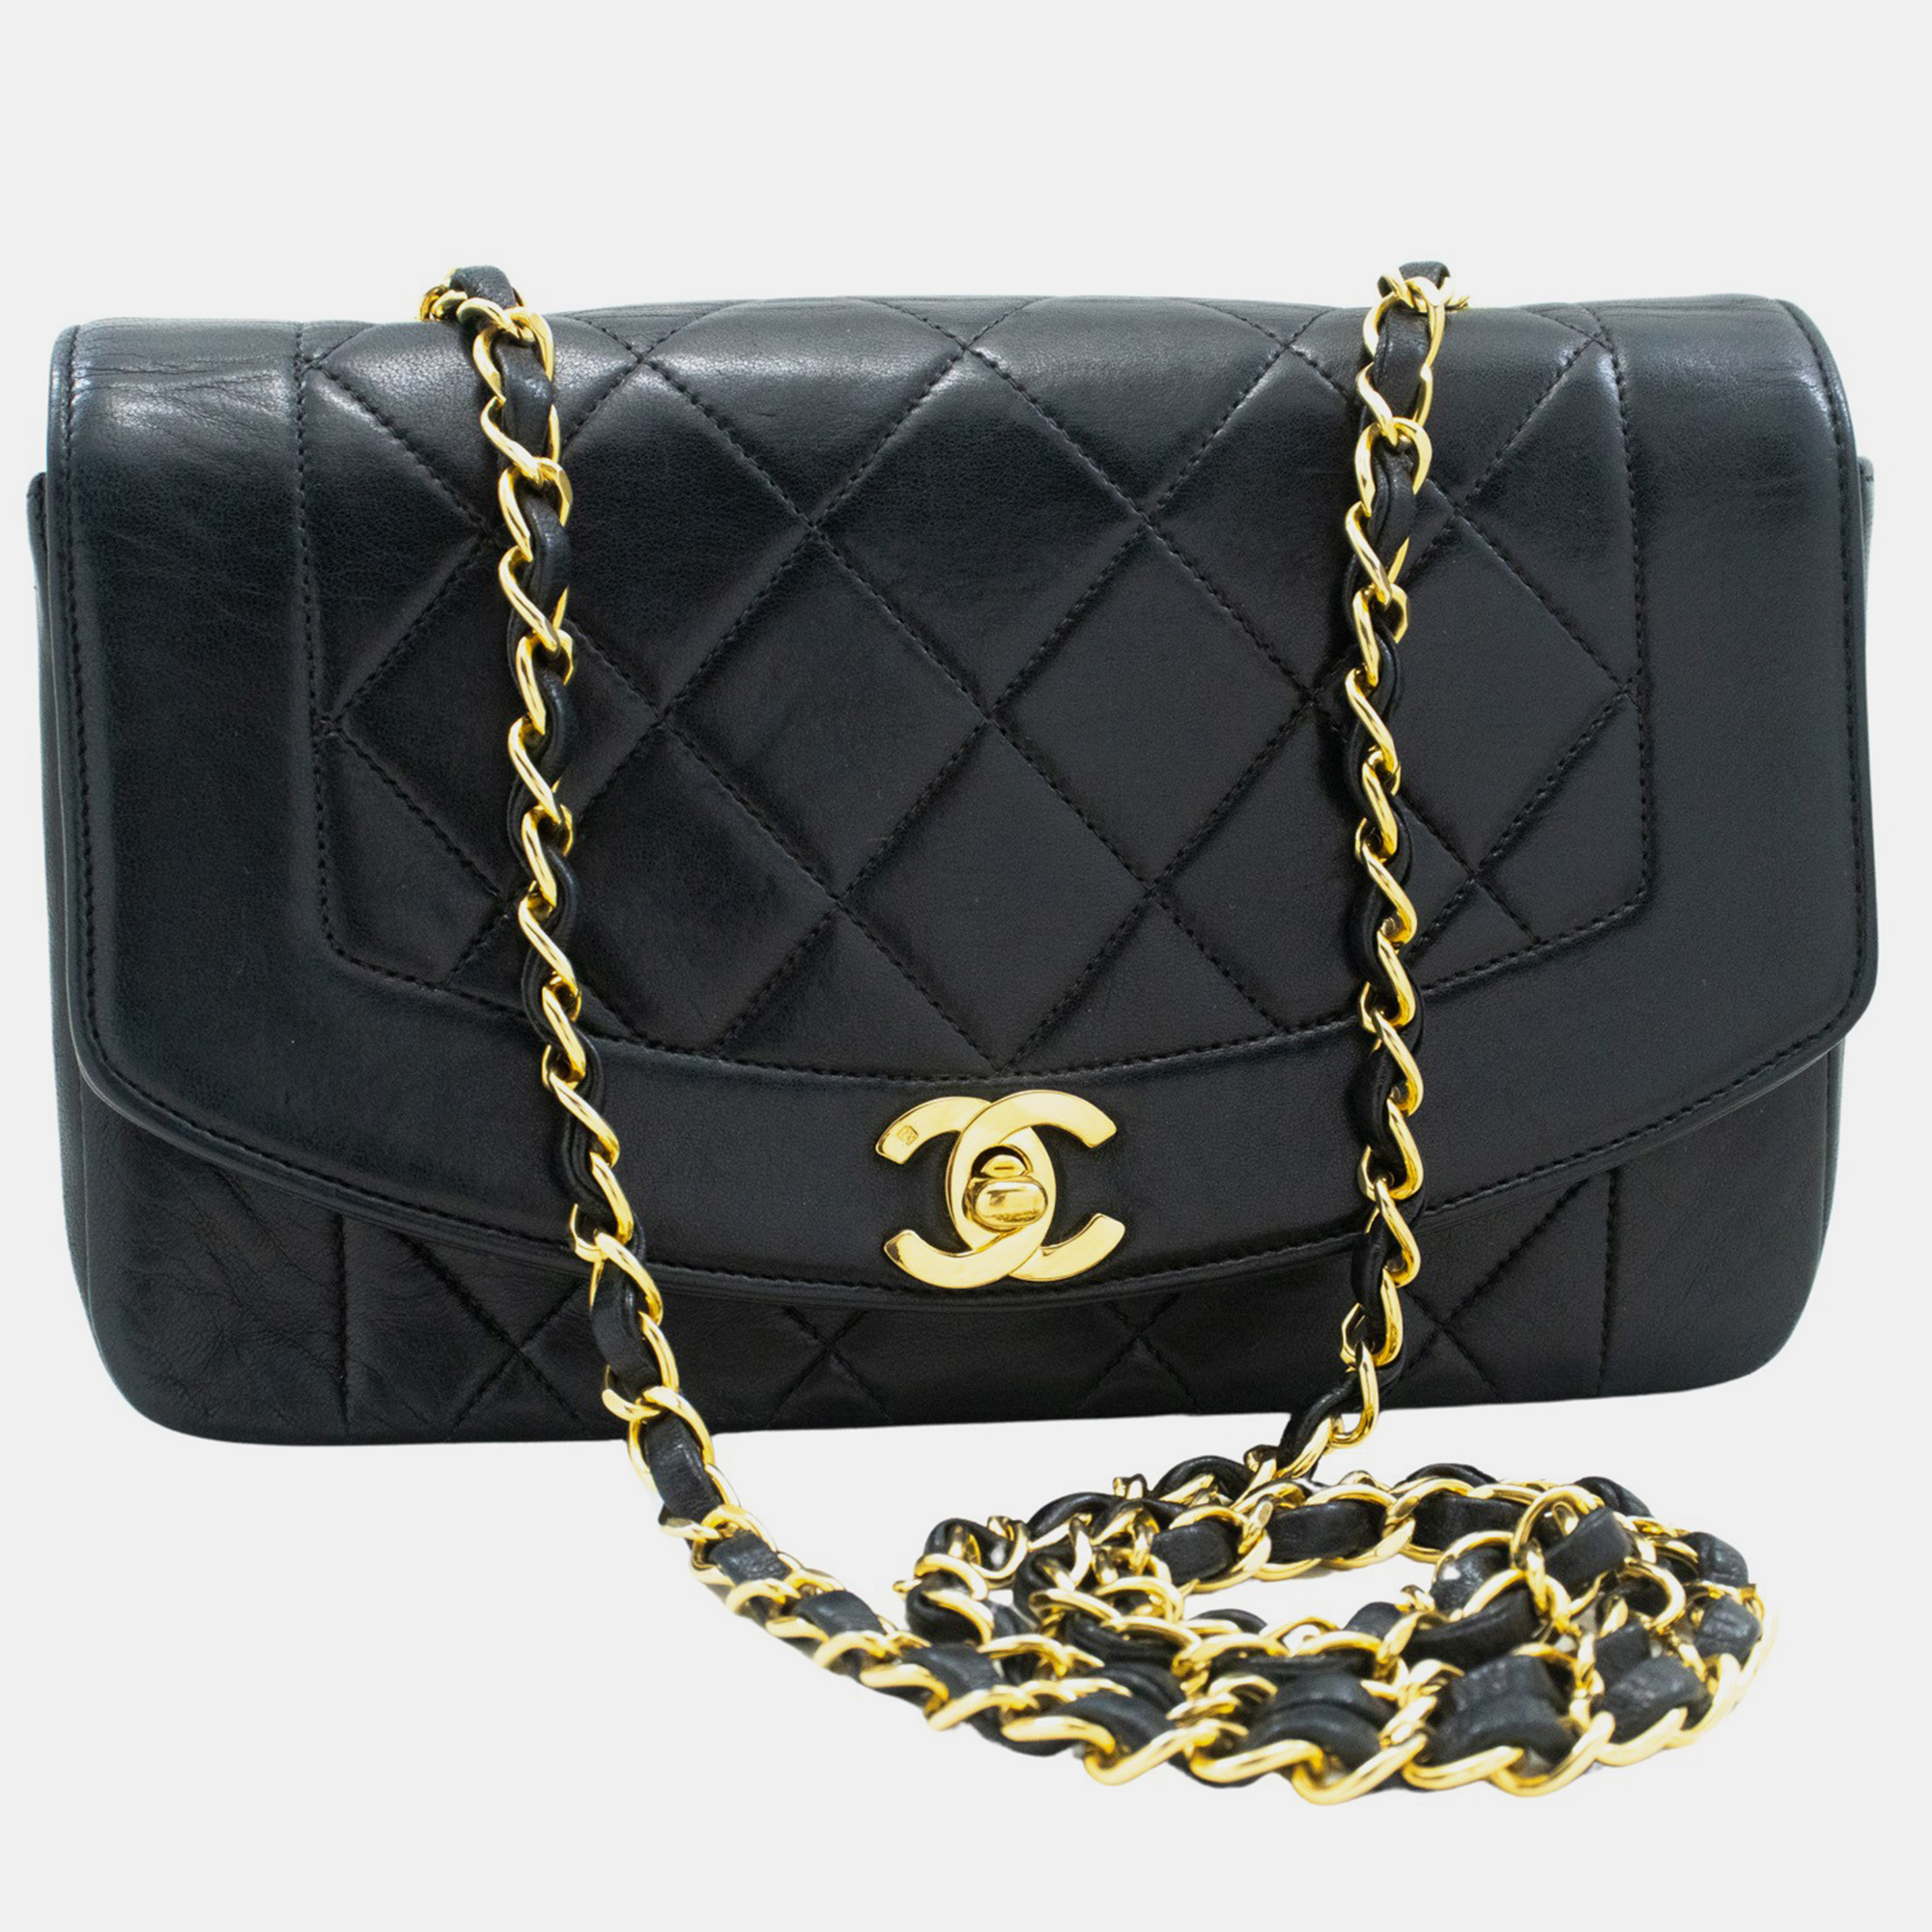 Chanel black leather  vintage diana flap bag